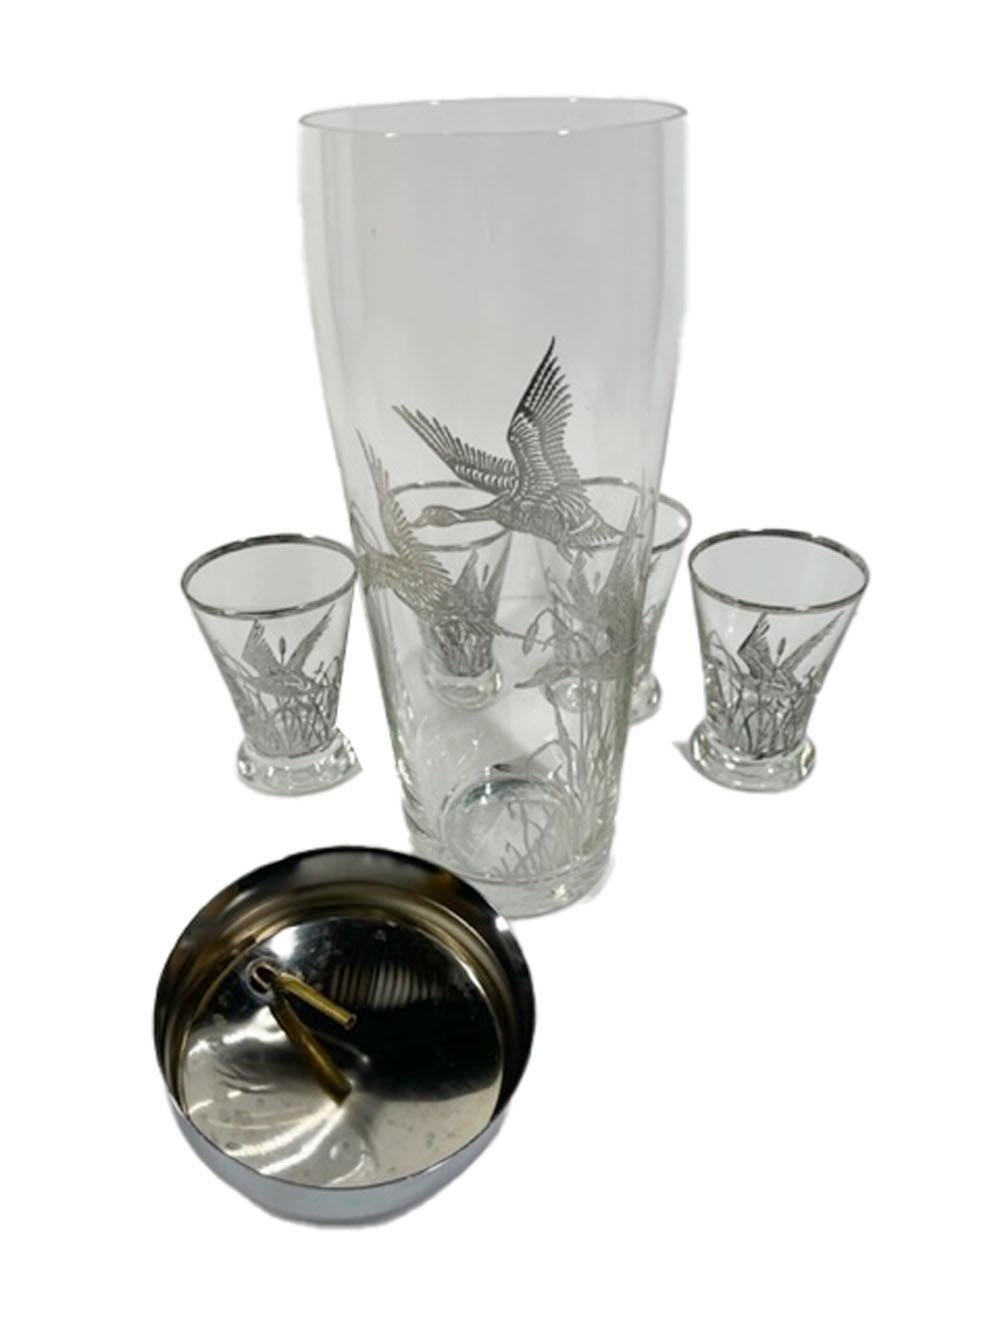 Shaker et 4 verres à cocktail en verre transparent avec un motif argenté représentant trois canards en vol parmi des quenouilles. Le shaker est muni d'un couvercle chromé.